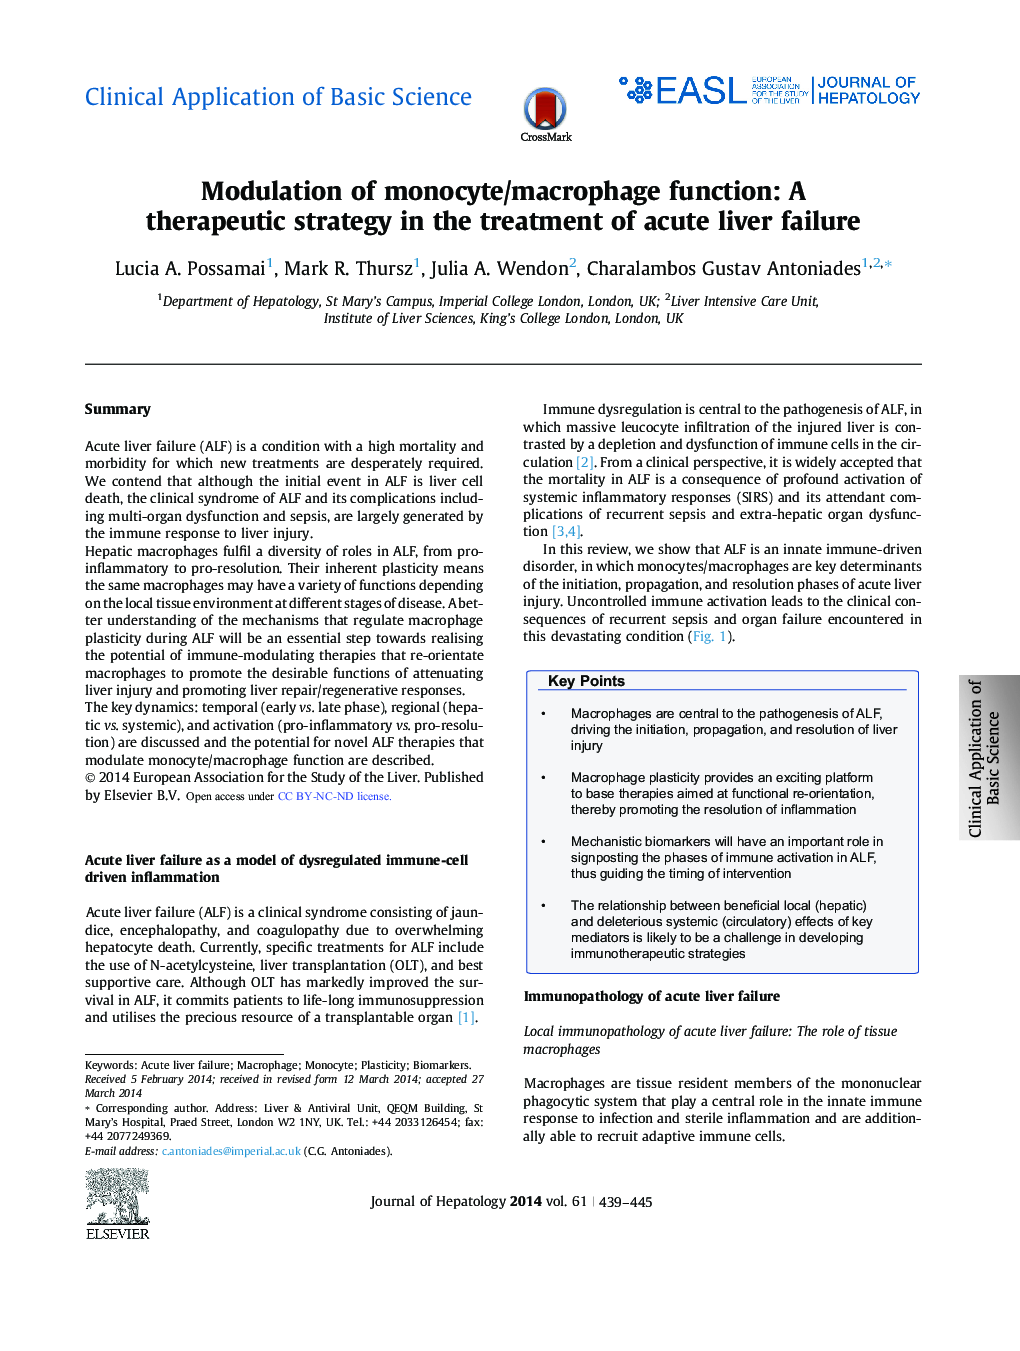 استفاده بالینی از علوم پایه مدلسازی عملکرد مونوسیت / ماکروفاژ: یک استراتژی درمانی در درمان نارسایی حاد کبدی 